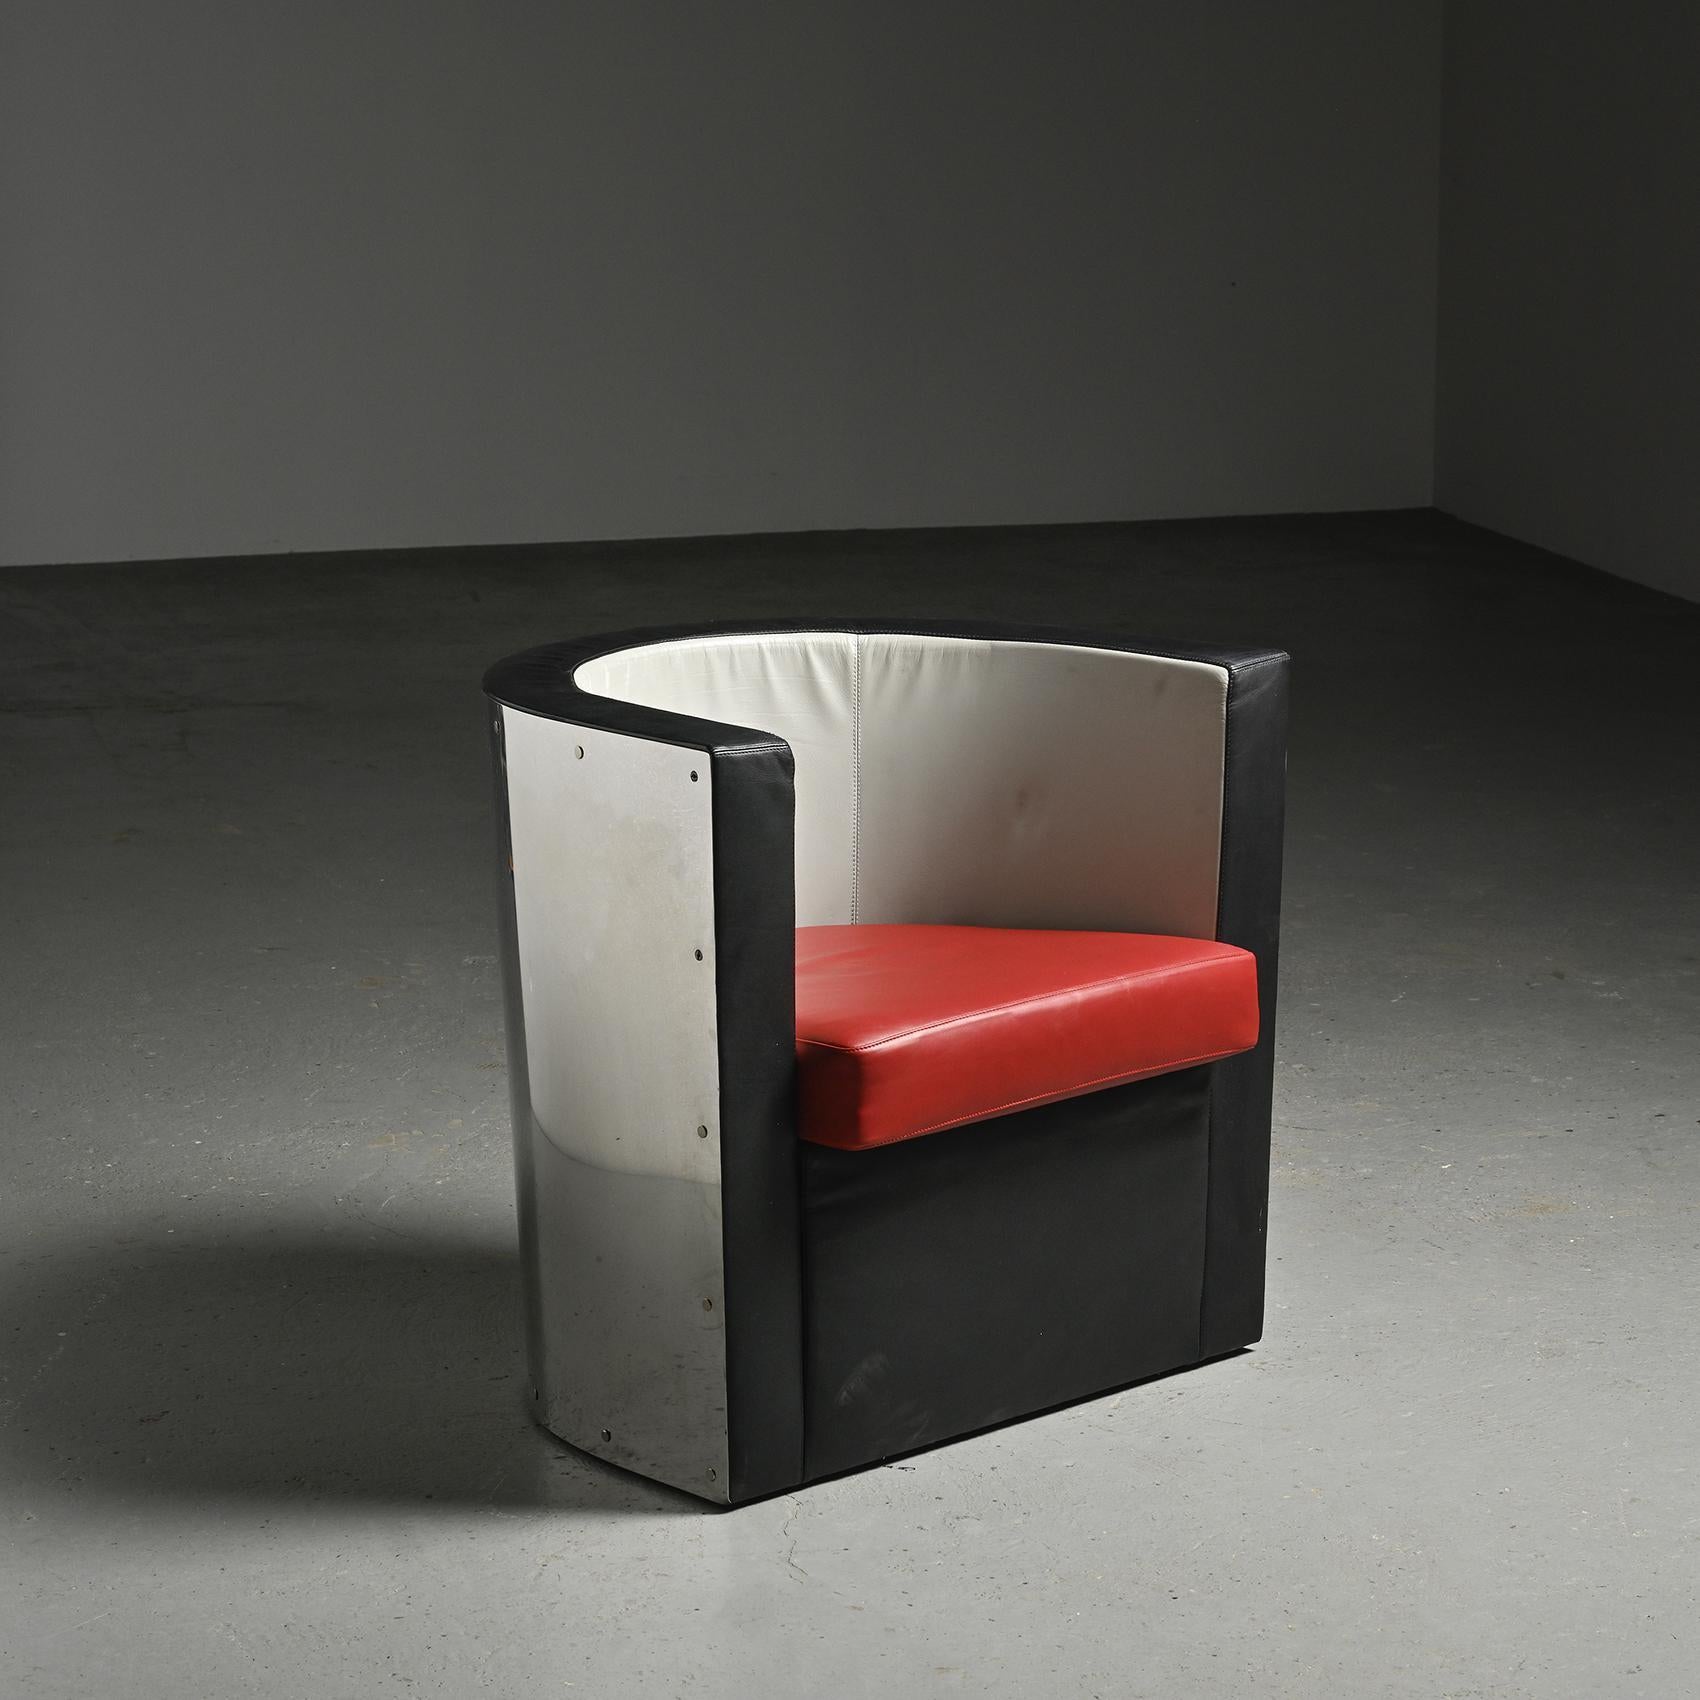 
Der Sessel D62 von El Lissitzky ist eine Ikone des modernen Designs. El Lissitzky, geboren als Lazar Markovich Lissitzky, war ein russischer Künstler, Architekt und Designer und eine Schlüsselfigur der konstruktivistischen Bewegung. Lissitzky, der